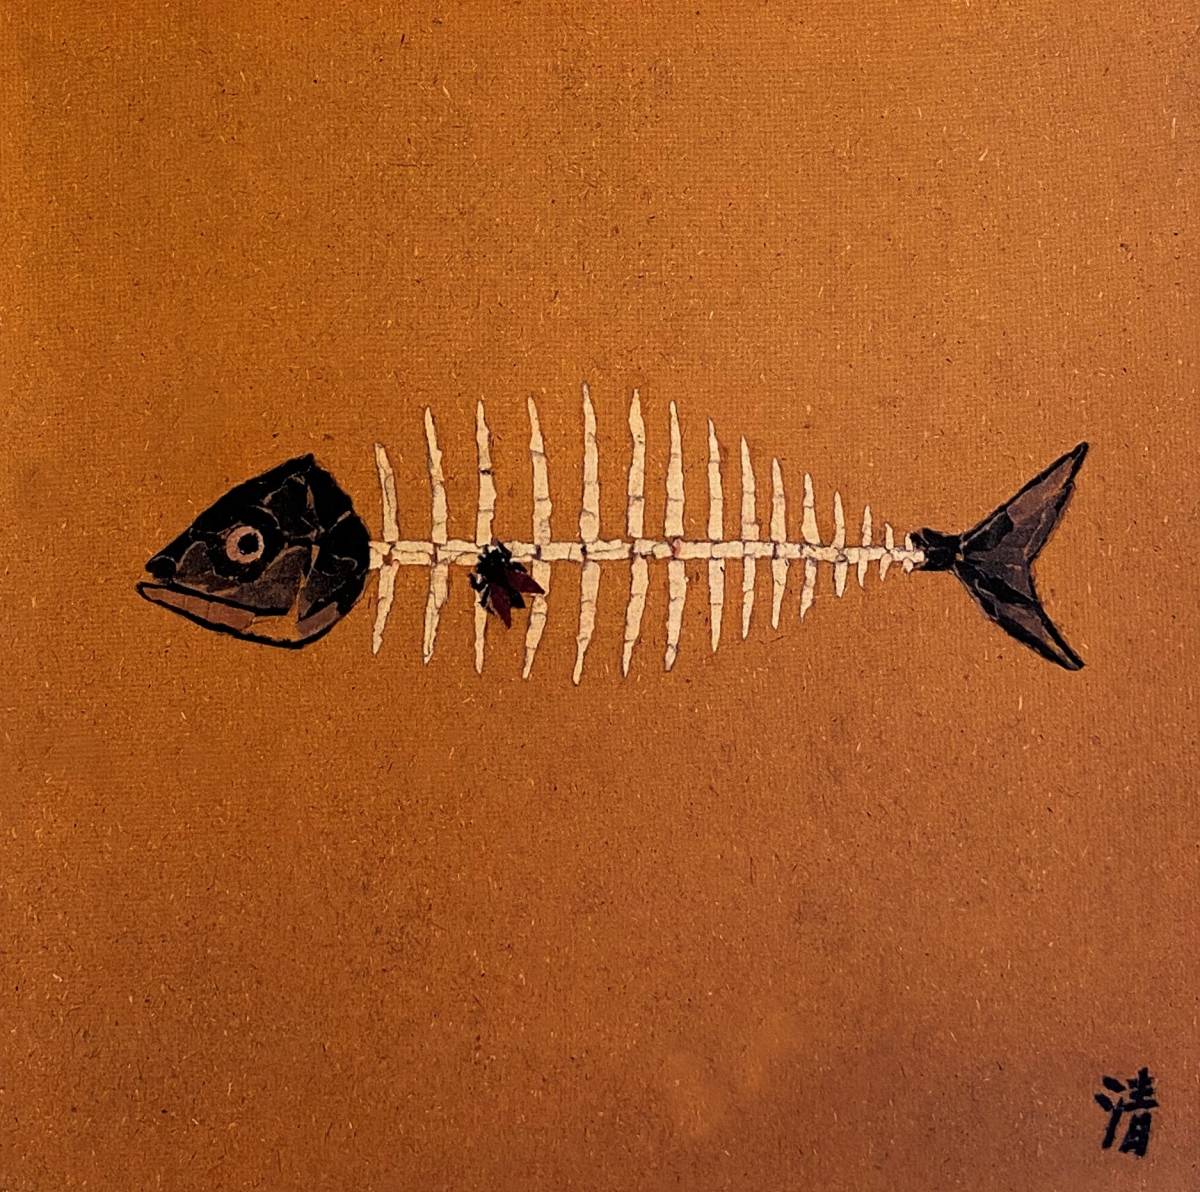 Kiyoshi Yamashita, Moscas sobre una espina de pescado, Libro de arte raro, Viene con un nuevo marco de alta calidad., En buena condición, envío gratis, Obra de arte, Cuadro, otros